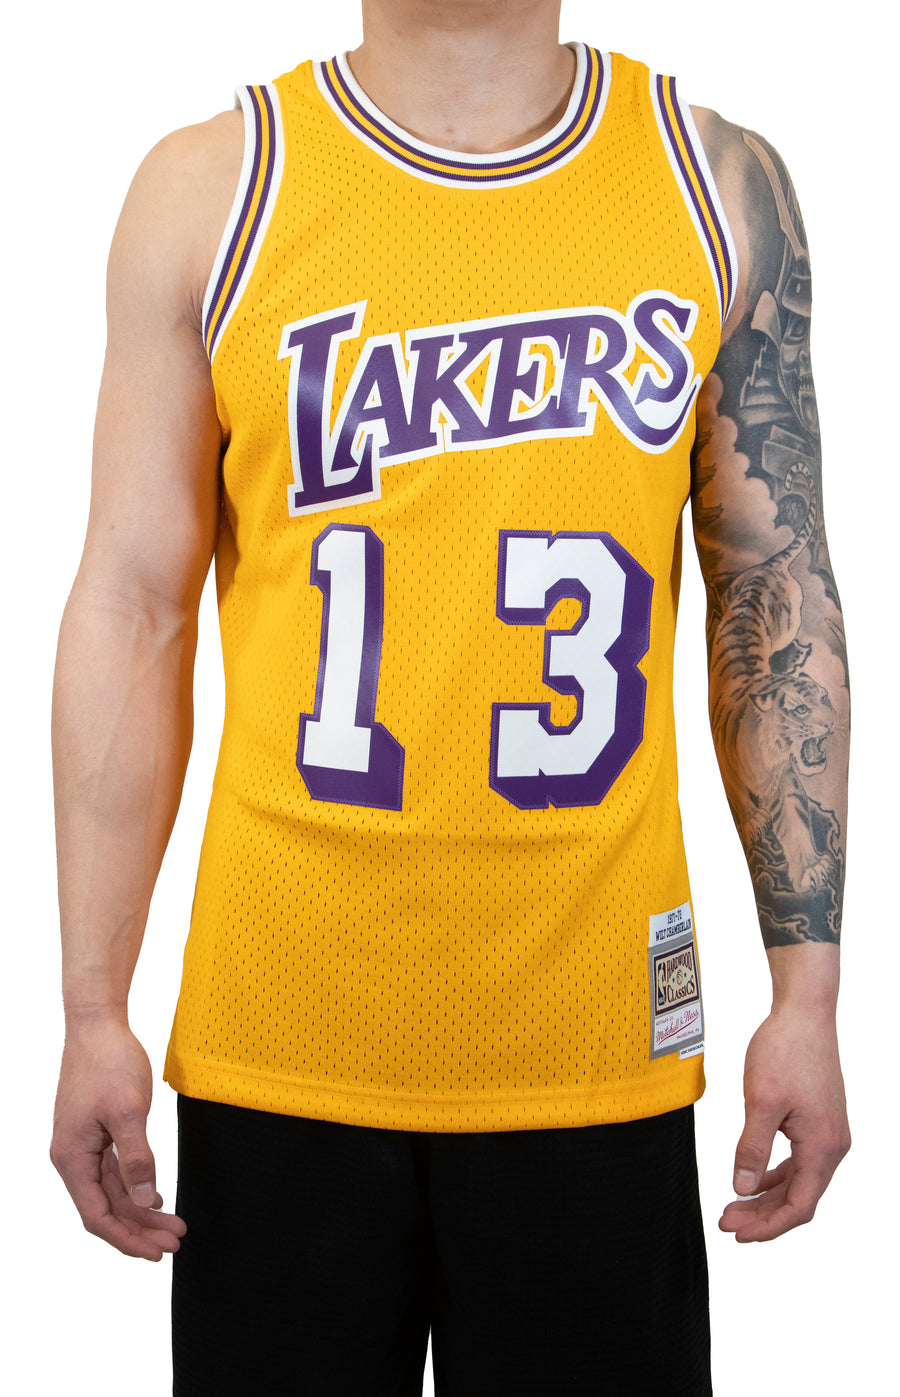 Mitchell & Ness NBA Los Angeles Lakers Jersey (Wilt Chamberlain) - Yellow